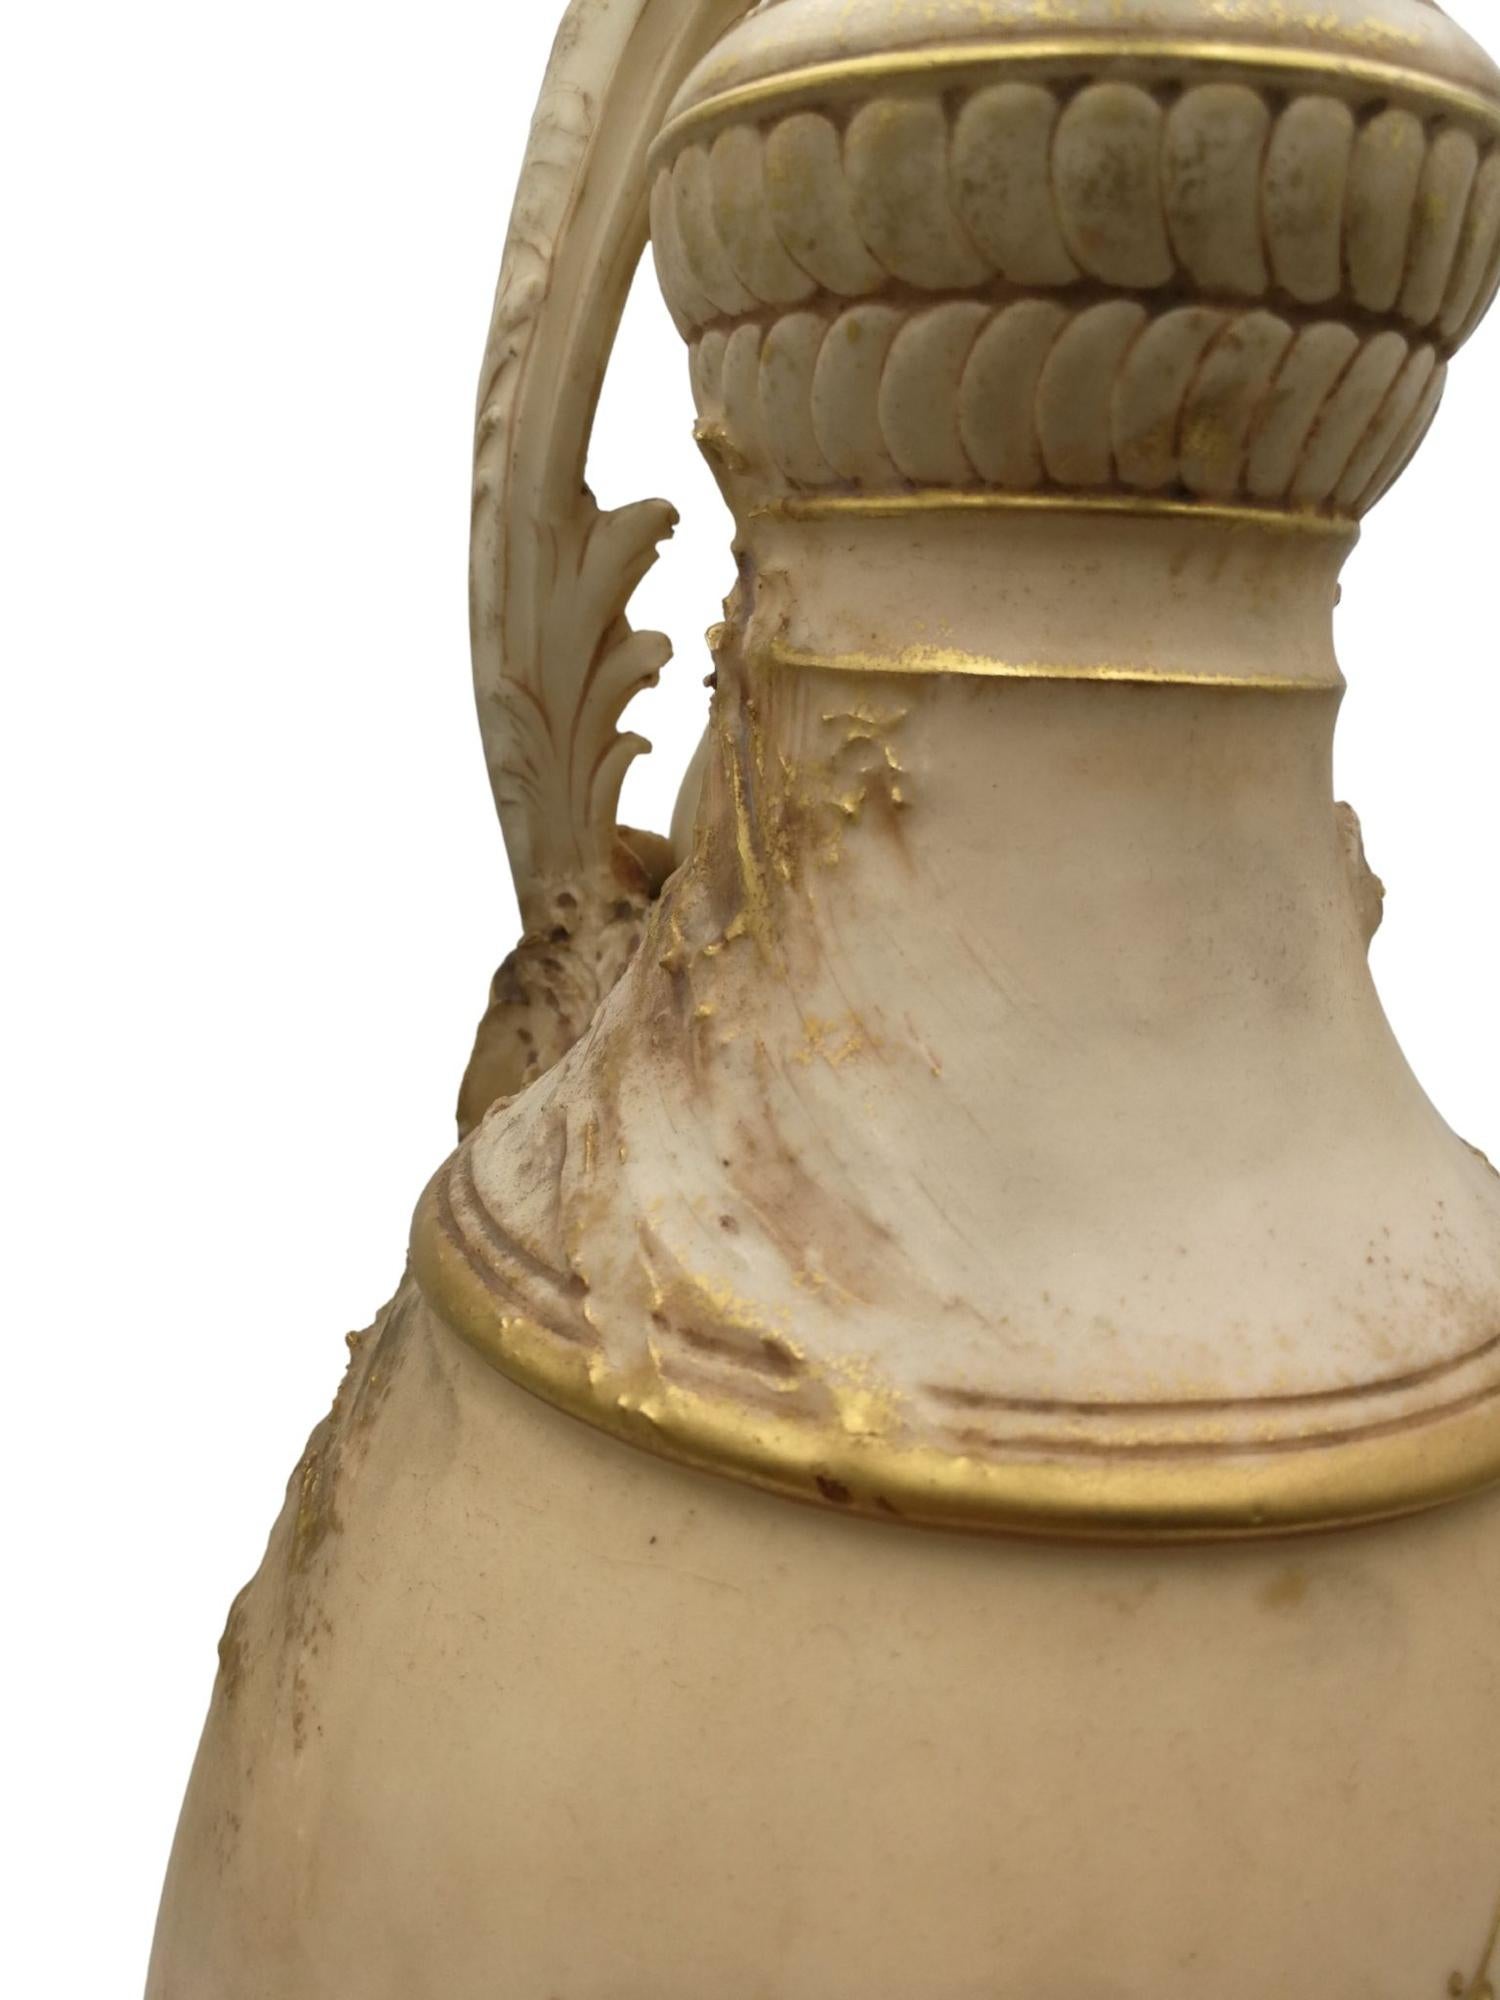 Lampe Art nouveau unique en porcelaine et bronze du début du 20e siècle. Le design de la porcelaine
d'une délicatesse et d'une finesse extraordinaires comprend une sirène nue et des fleurs en relief avec des dorures.
des finitions ainsi qu'une